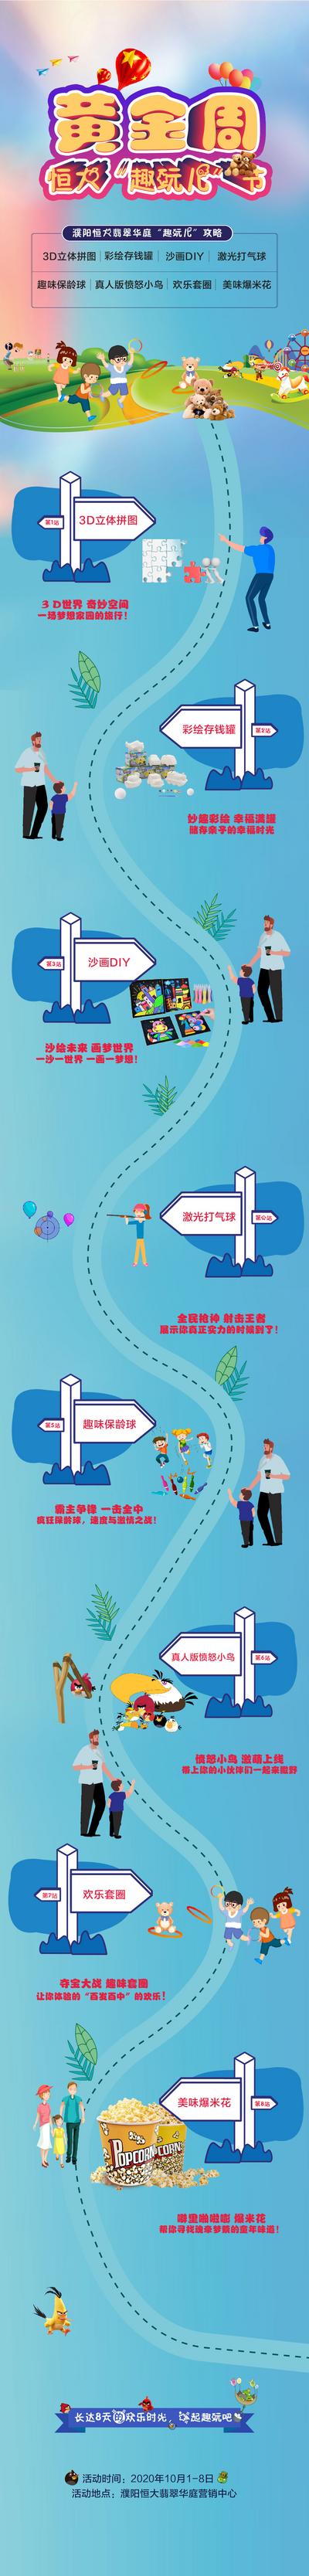 南门网 海报 长图 房地产 公历节日 国庆节 活动 黄金周 手绘 